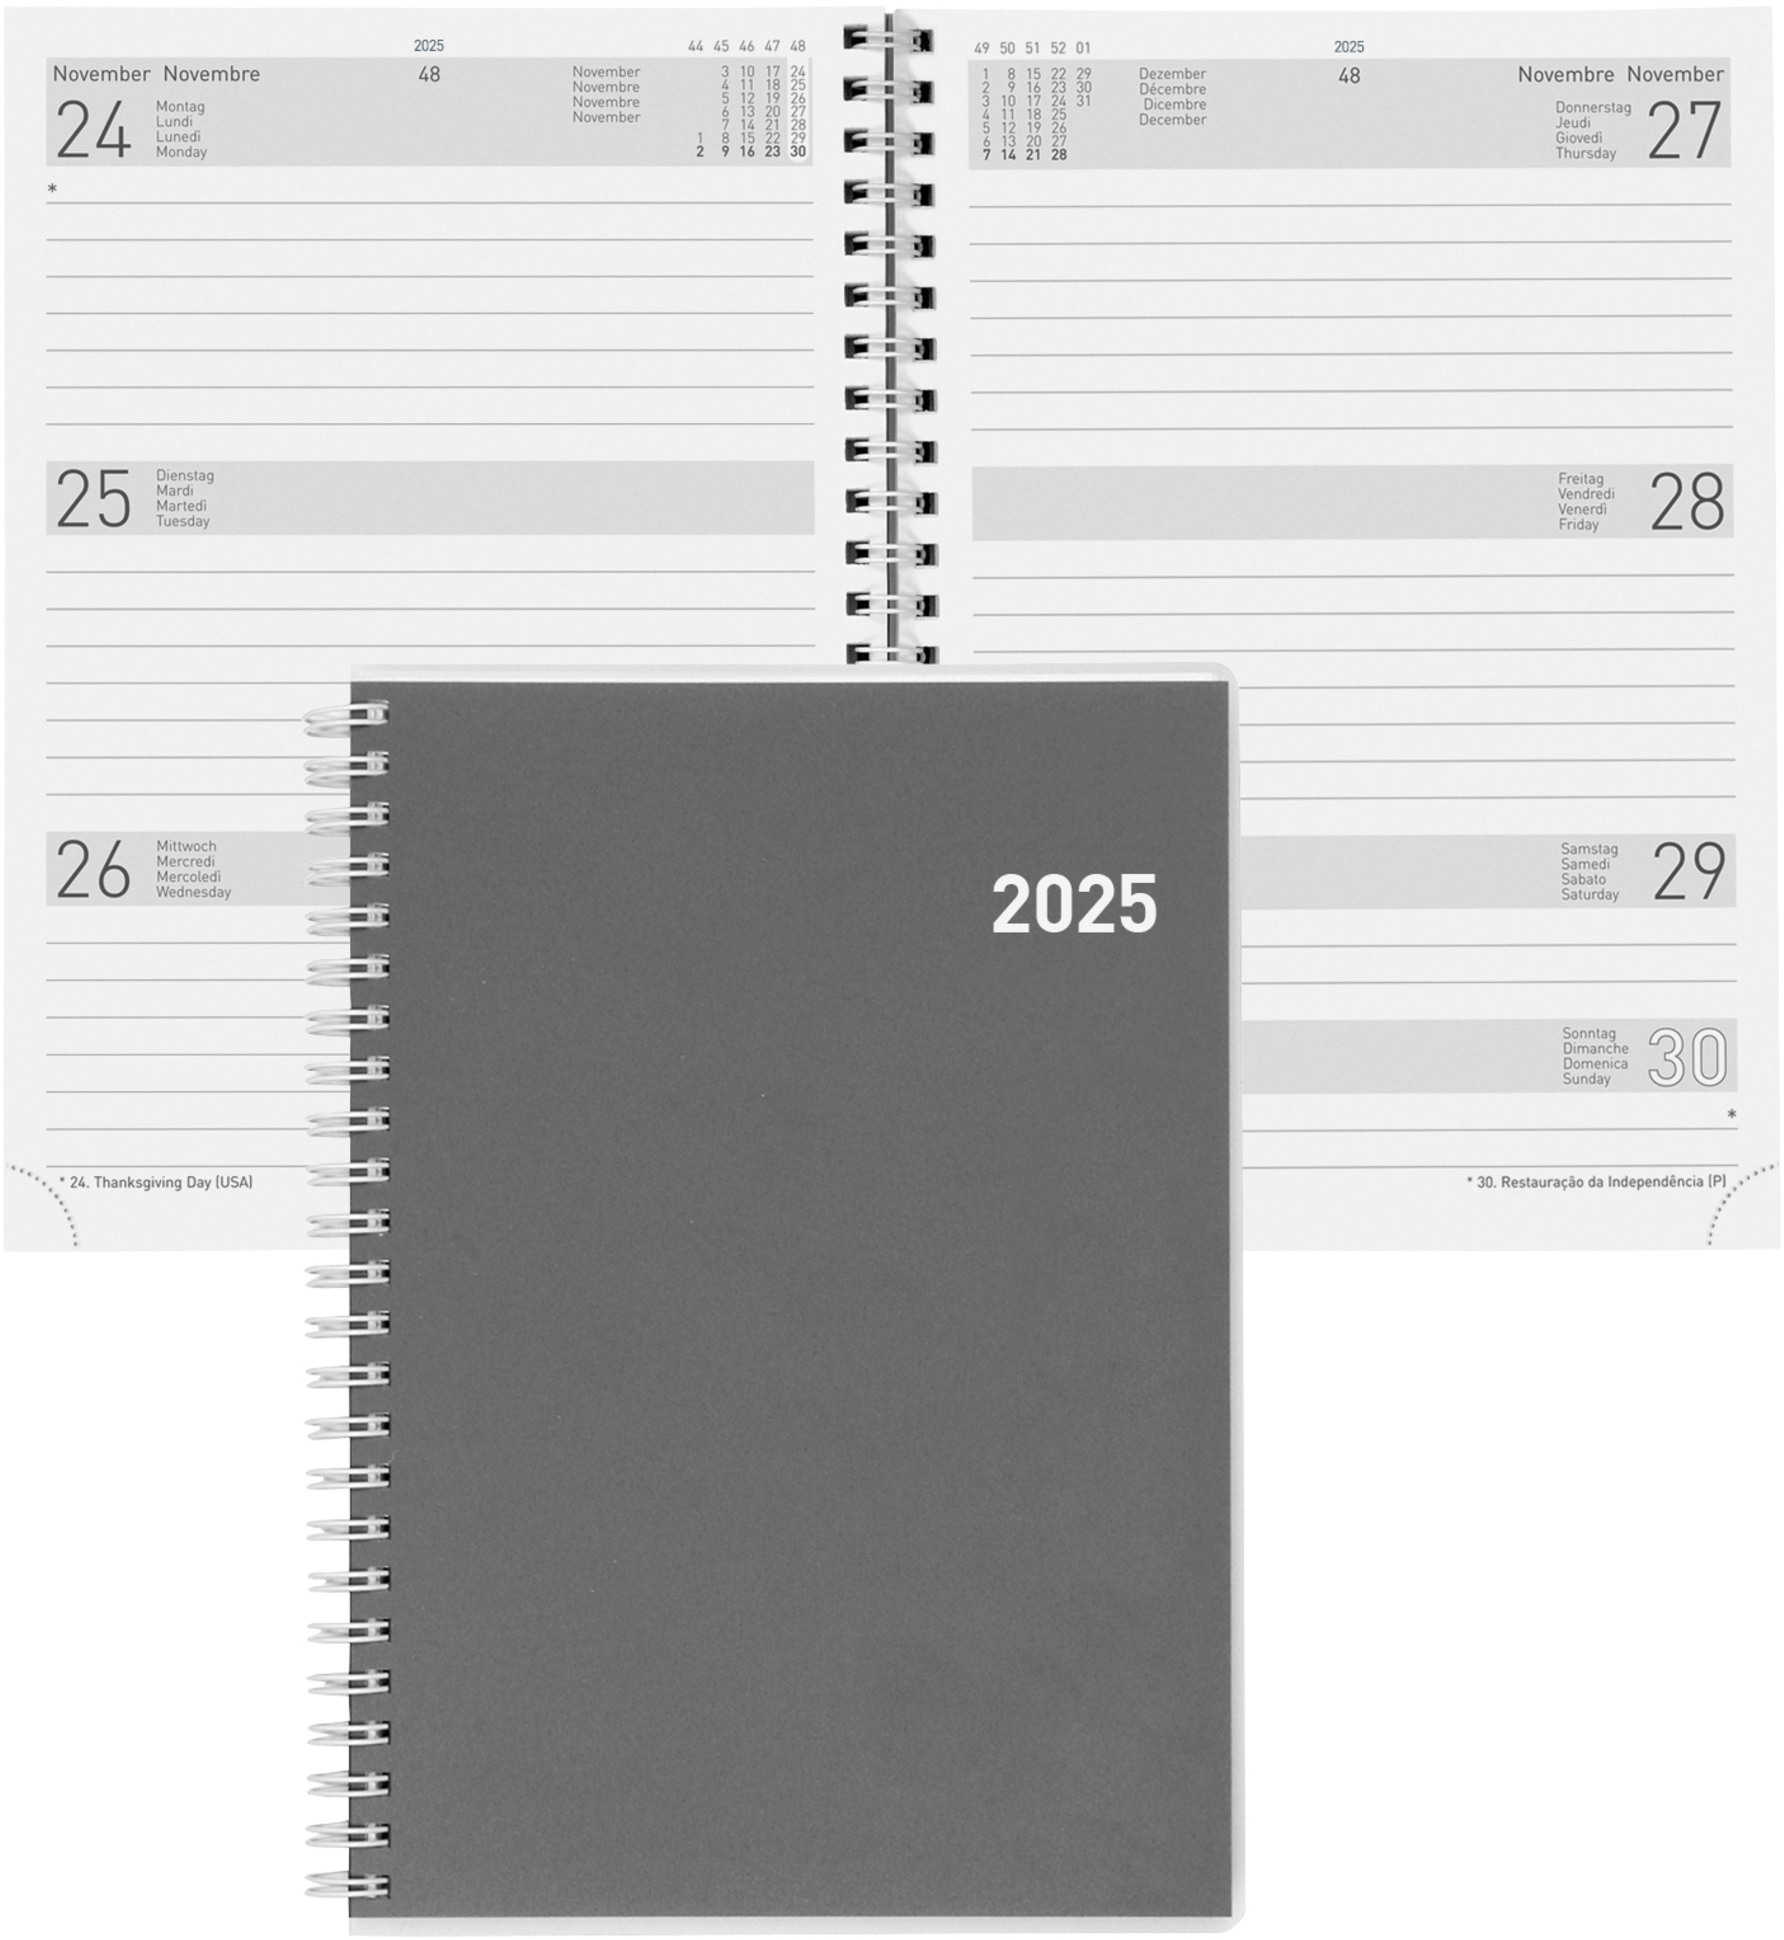 BIELLA Agenda Dispo Term Wire-O 2025 808535000025 1S/2P Cylar ML 14.5x20.5cm